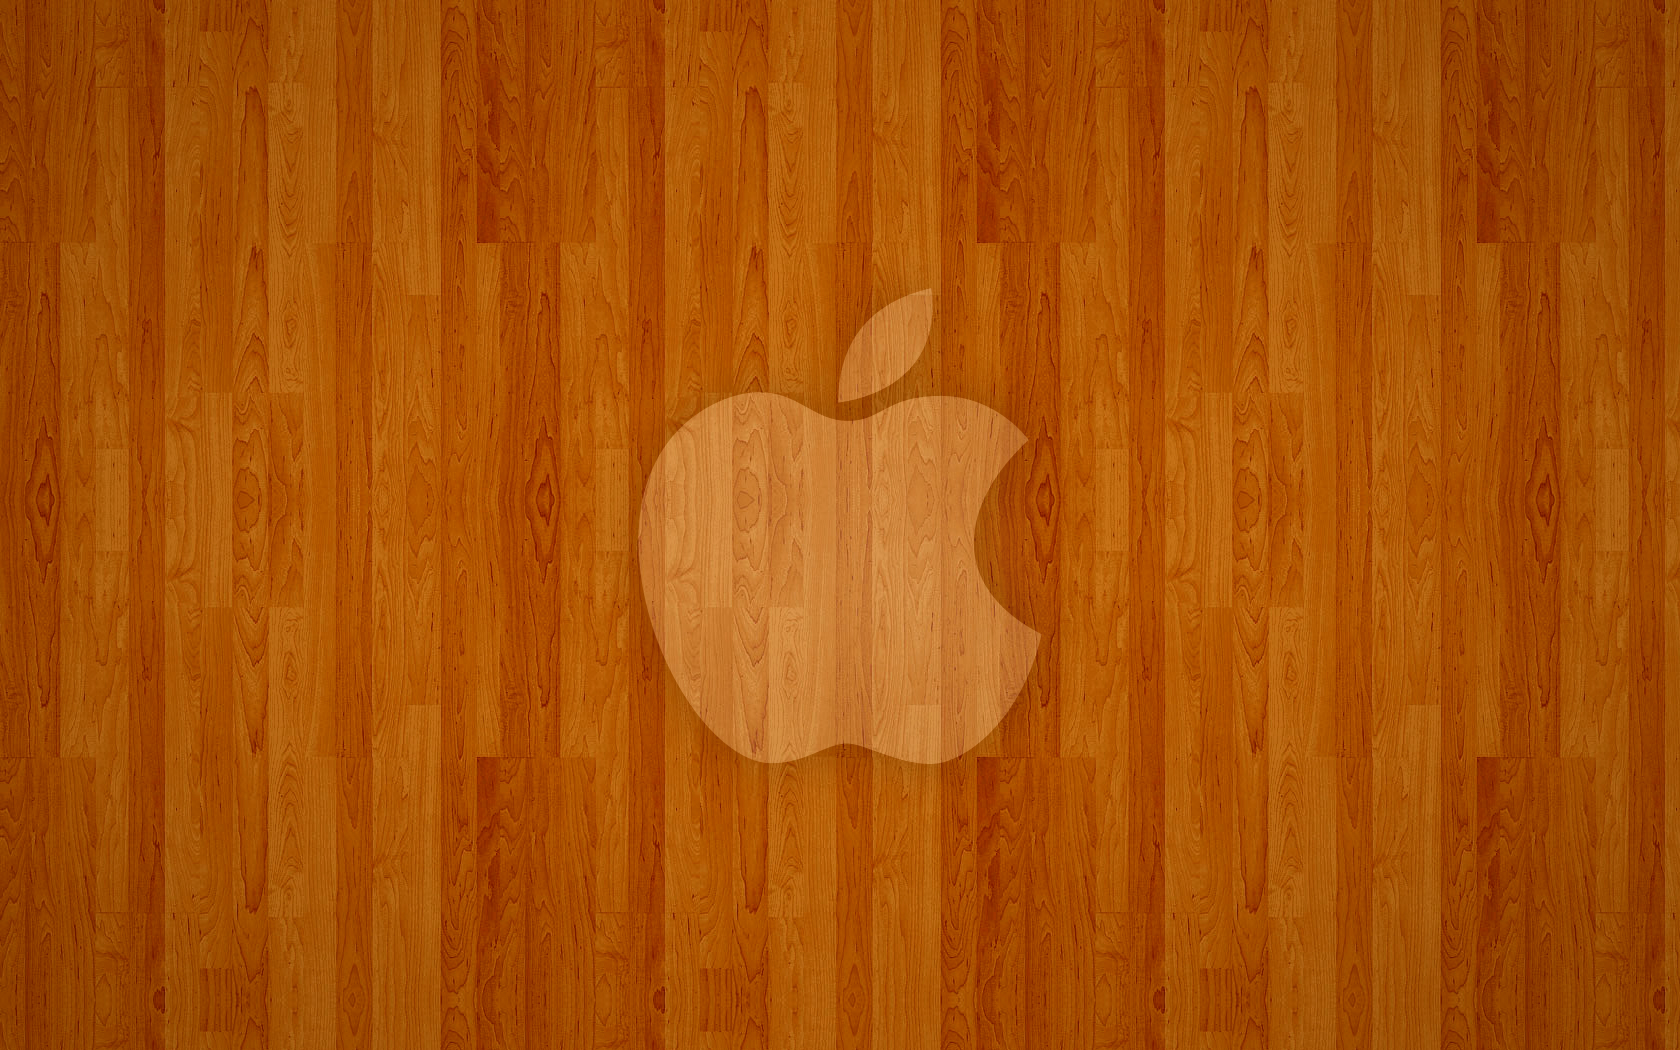 Wooden Apple v2 by JayXdesk on DeviantArt